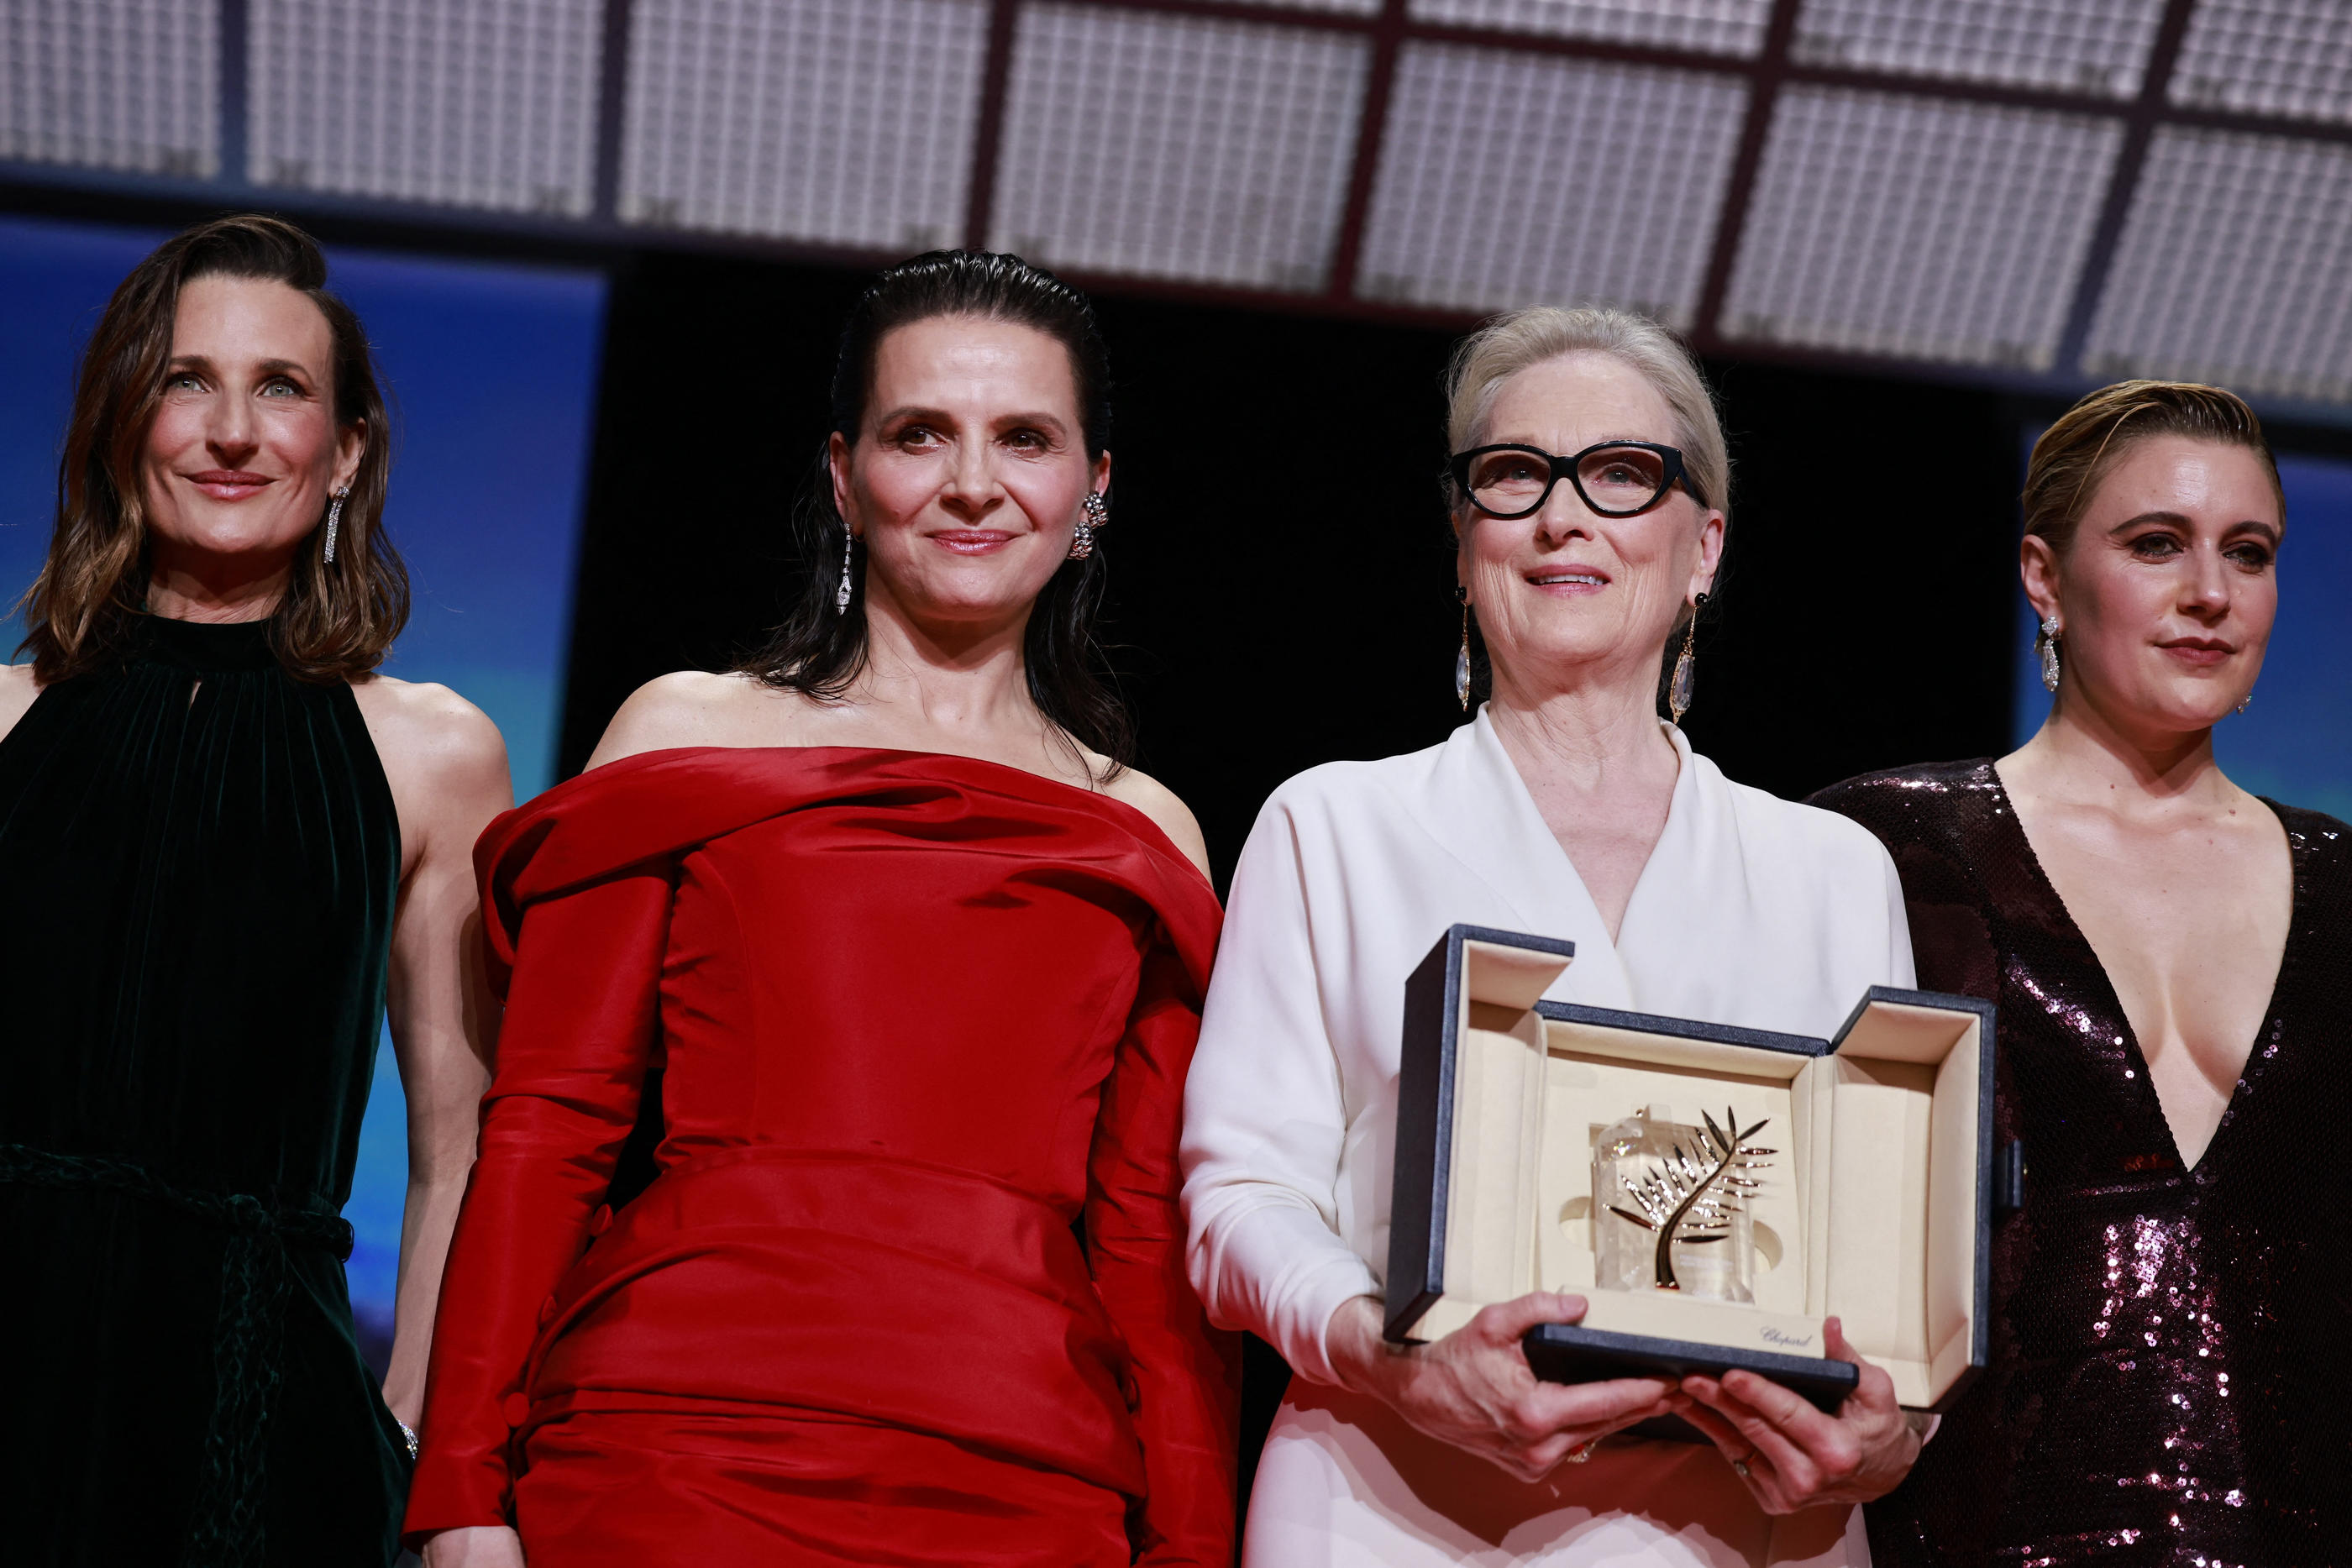 L'actrice Meryl Streep, récompensée d'une Palme d'Or d'honneur, avec Juliette Binoche (en rouge), Greta Gerwig, la présidente du Jury du 77ème Festival de Cannes et Camille Cottin (à gauche) lors de la cérémonie d'ouverture ce mardi 14 mai. REUTERS/Yara Nardi